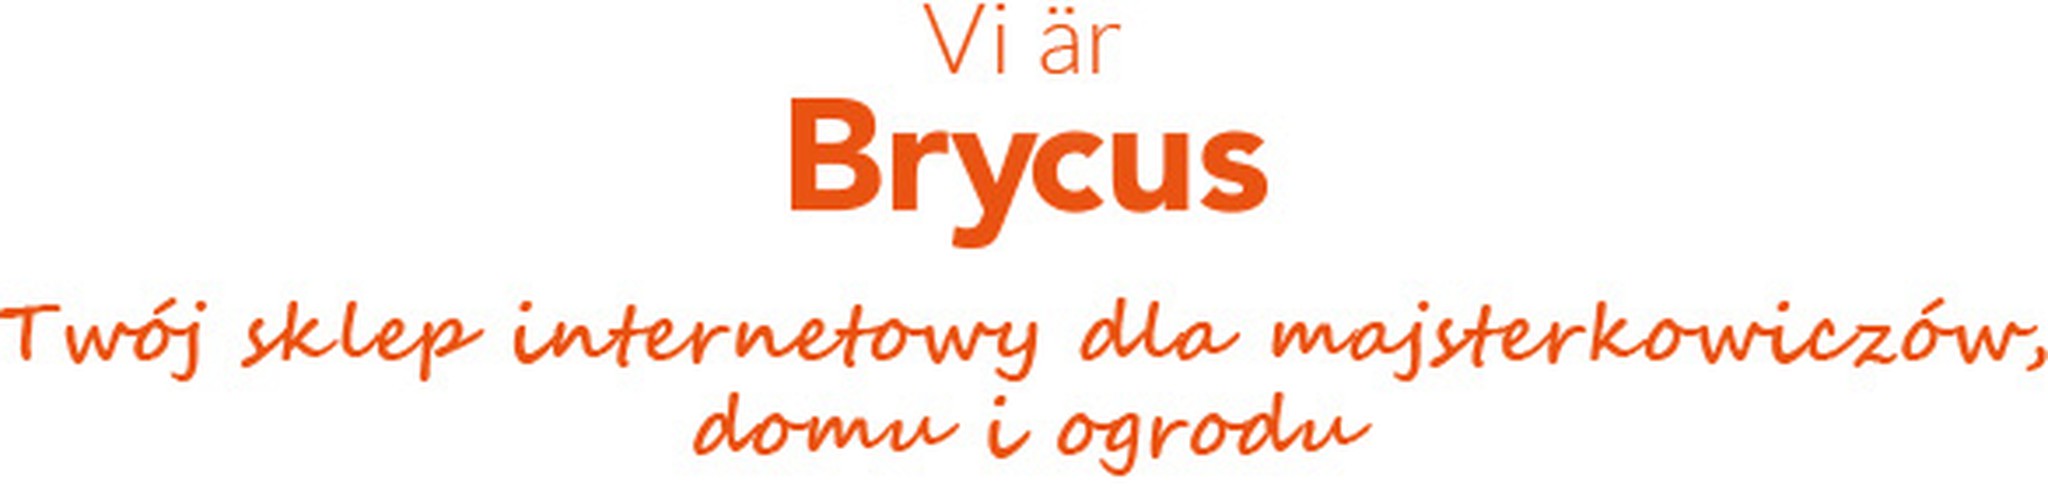 Jesteśmy Brycus, Twój sklep internetowy DIY, Home i Garden